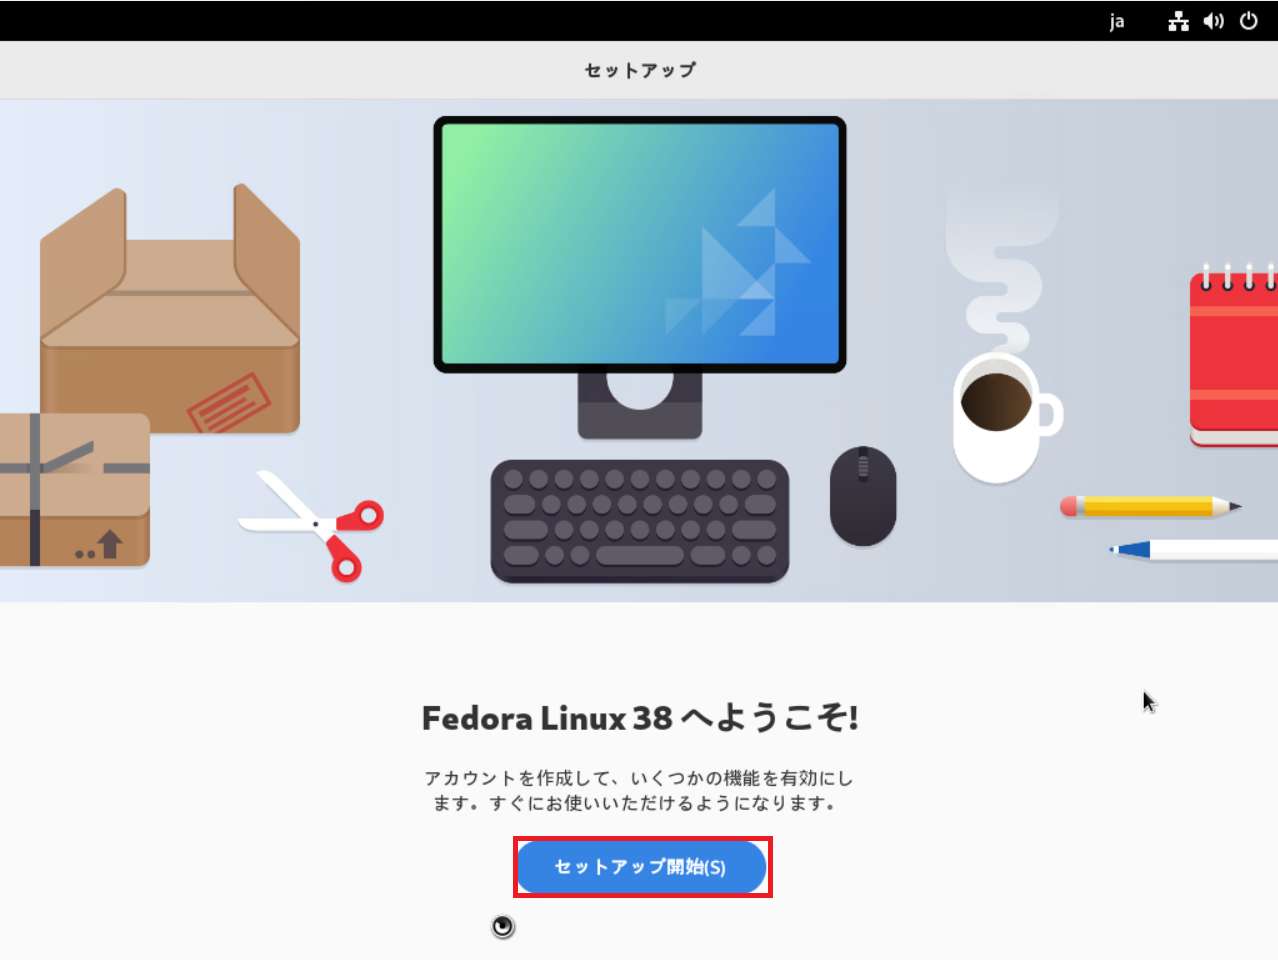 Fedora Linux 38へようこそ